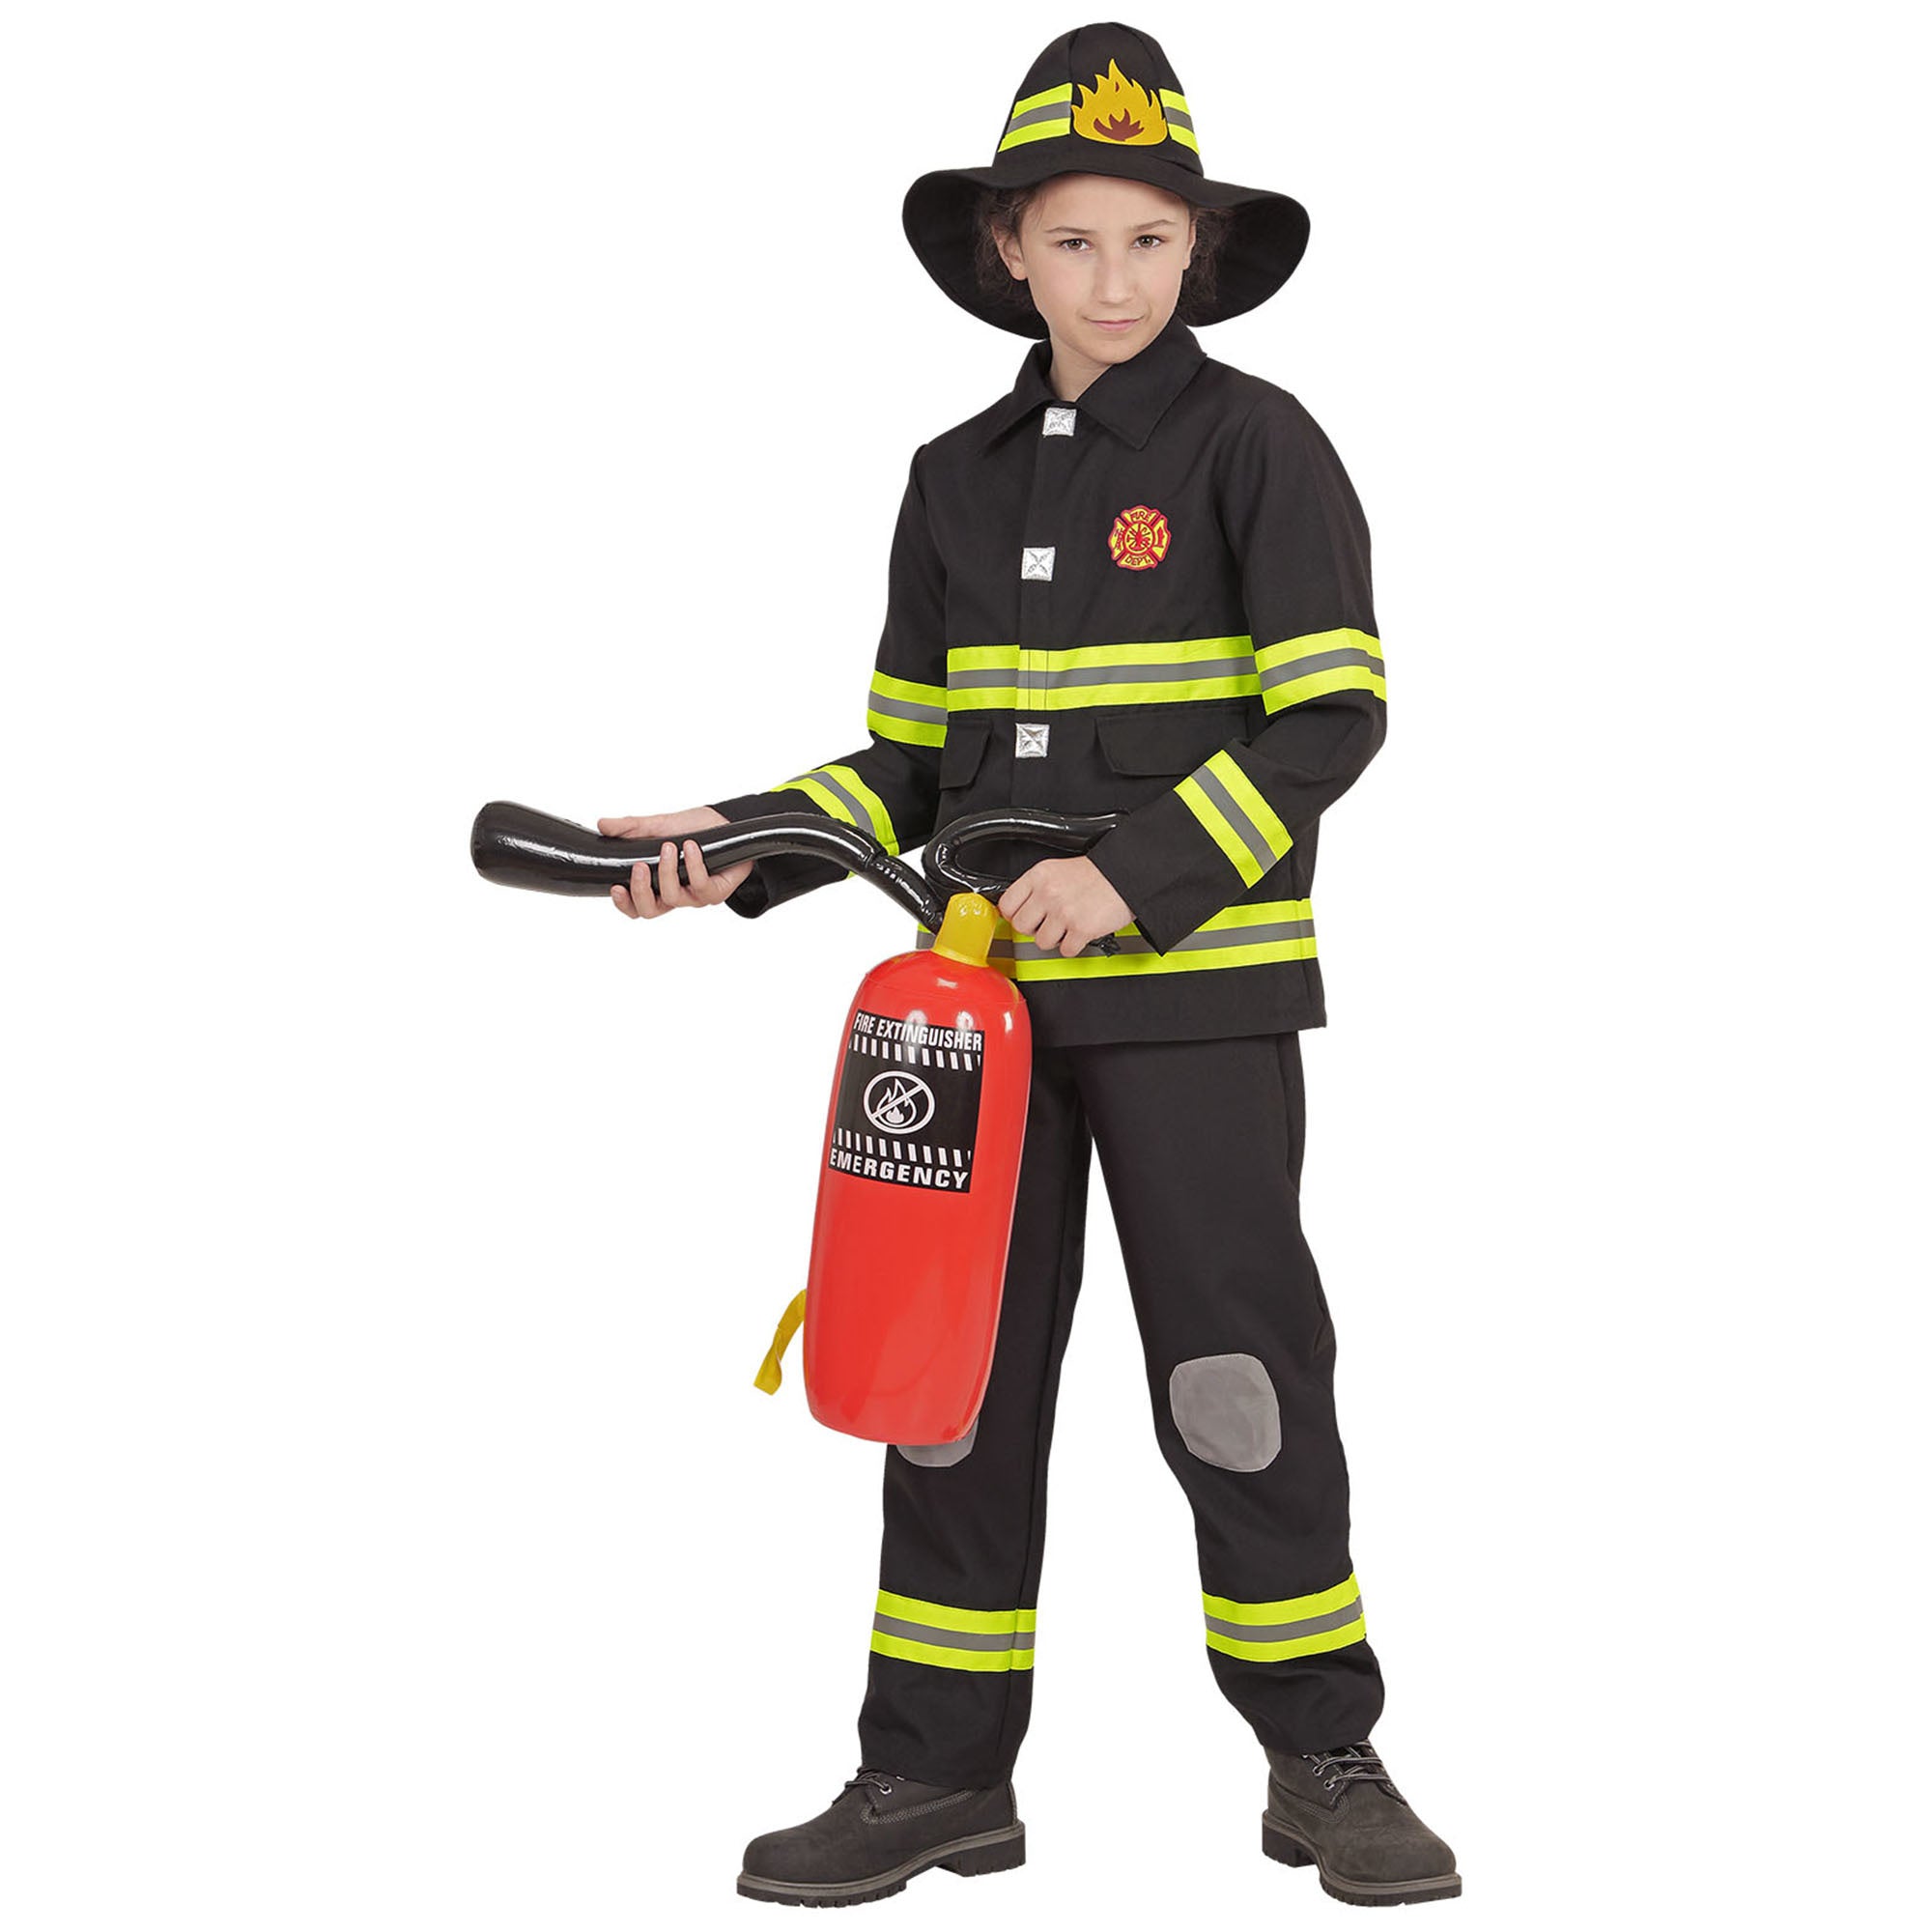 Ruig brandweer kostuum Fire kinderen